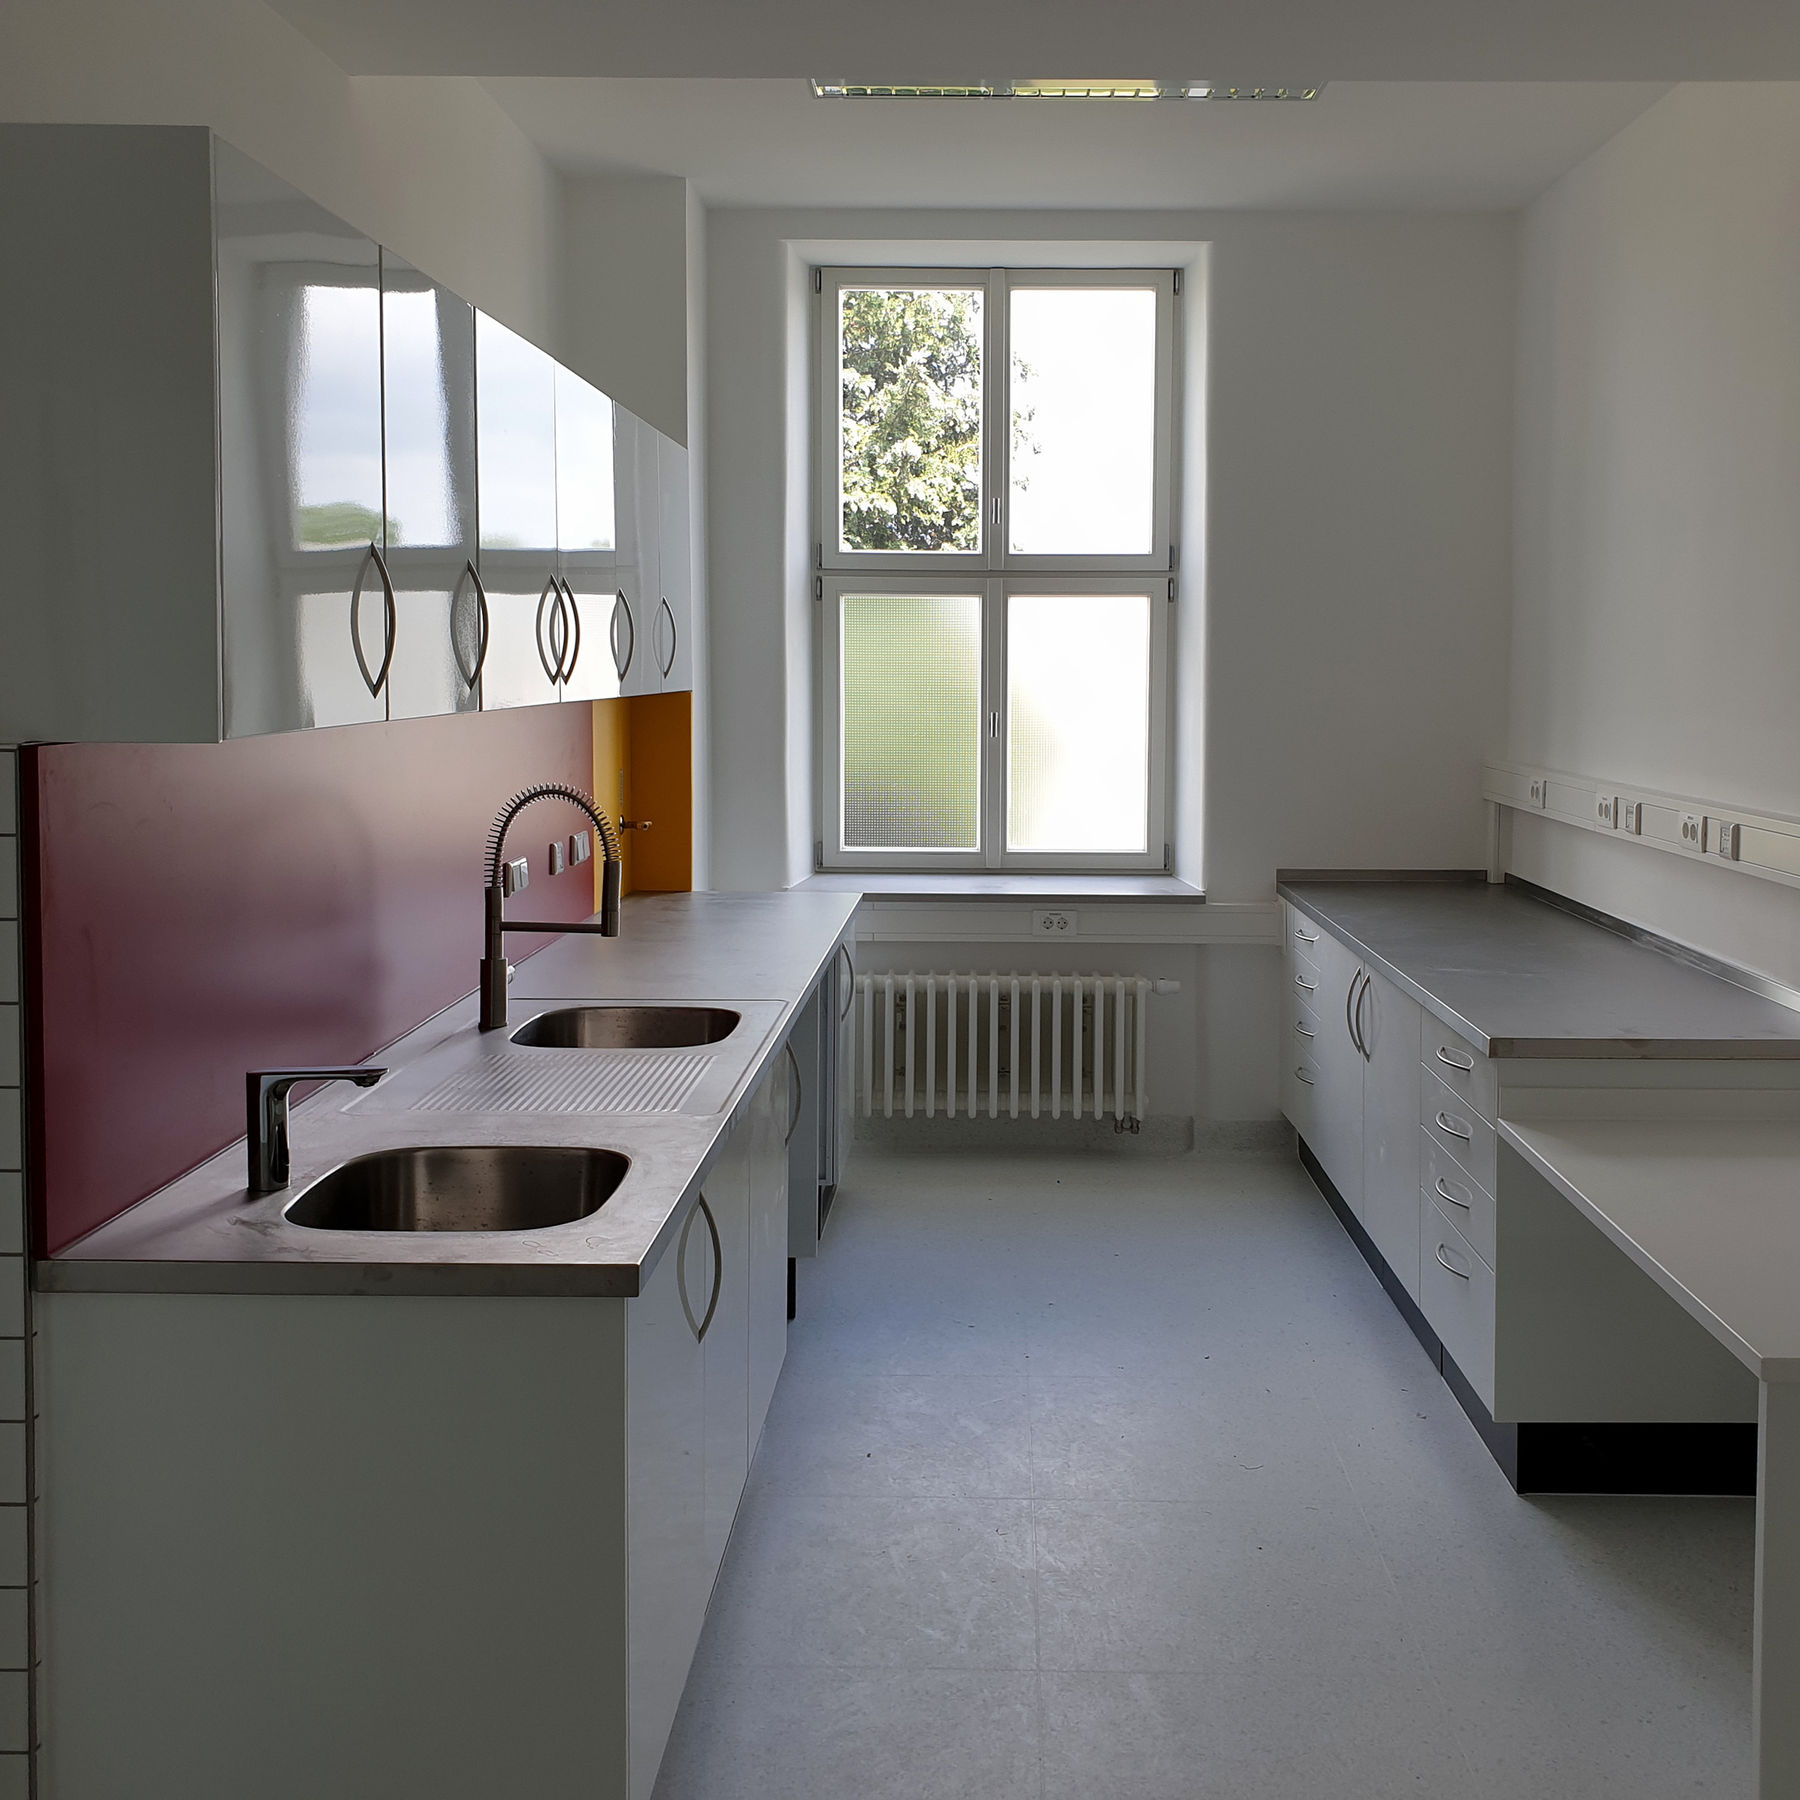 Sanitätsversorgungszentrum Gebäude 2 © 2021 SBL Neubrandenburg